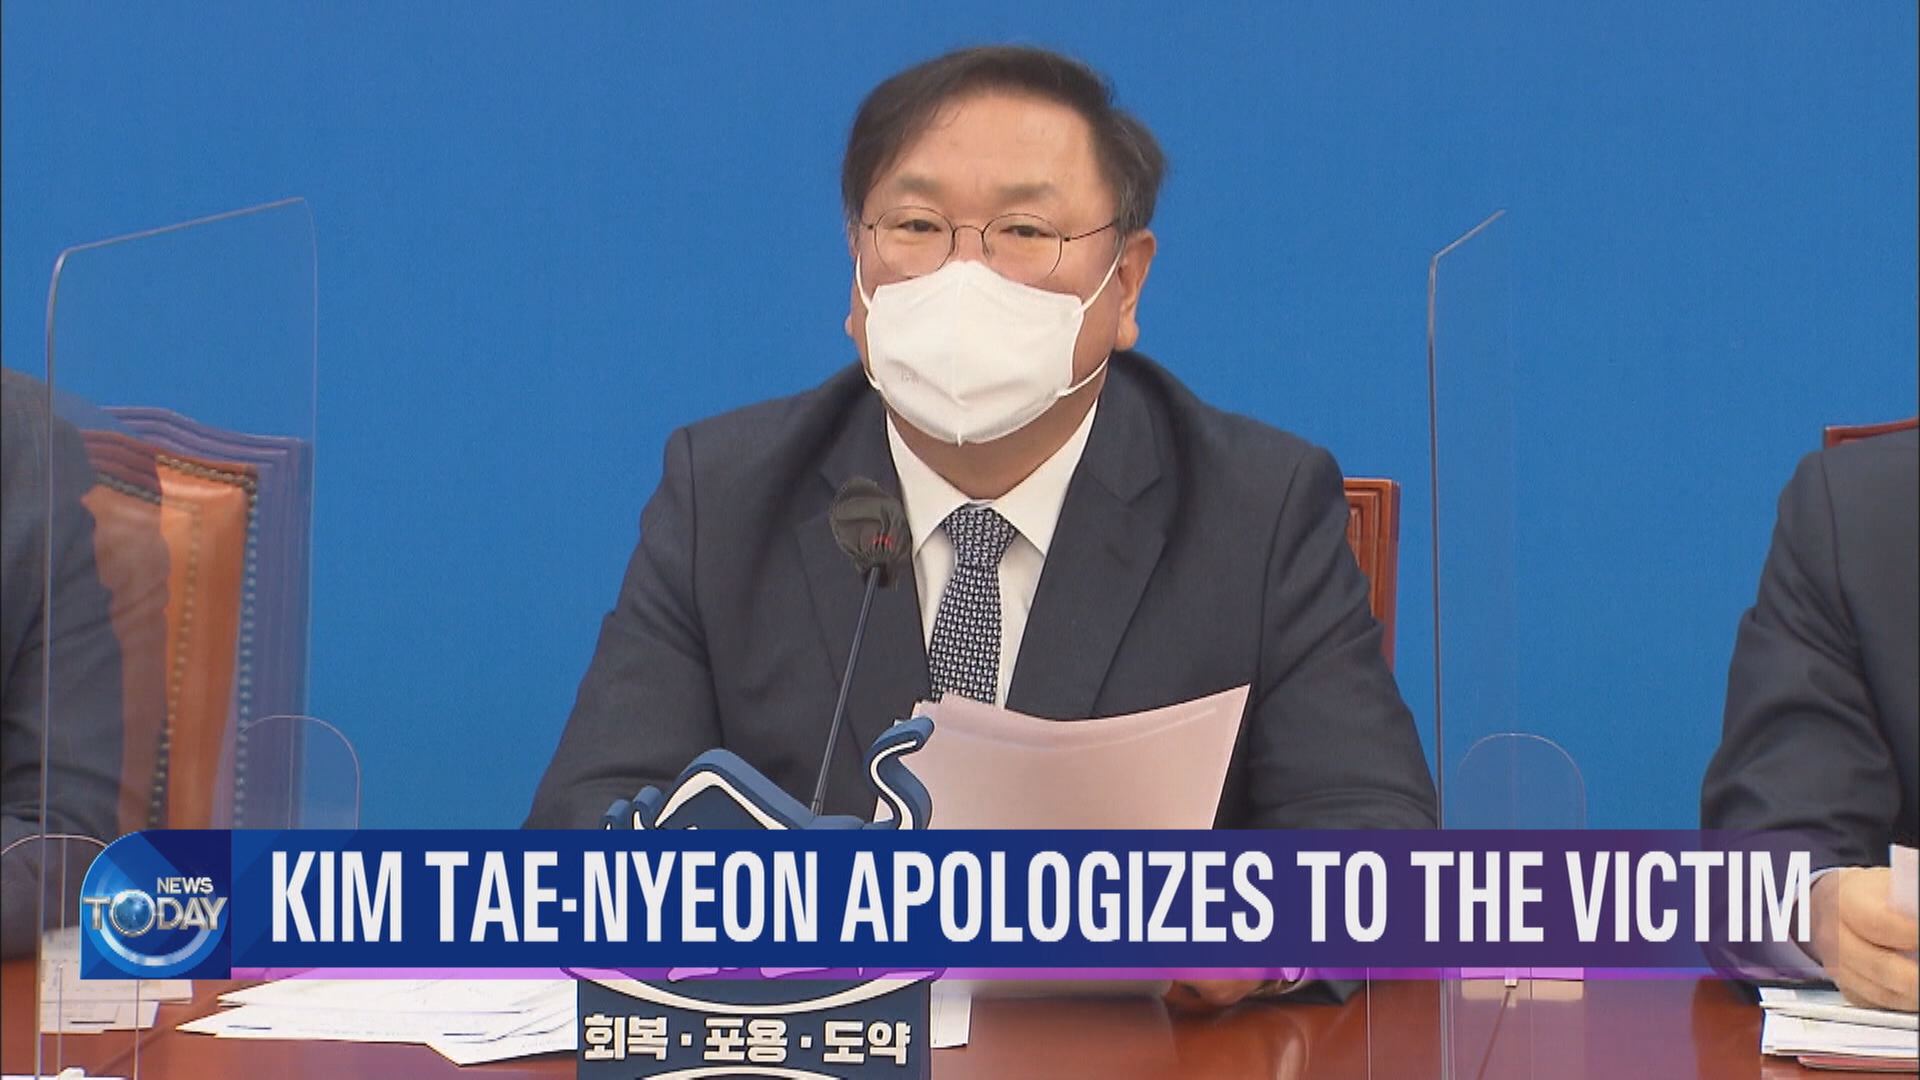 KIM TAE-NYEON APOLOGIZES TO THE VICTIM